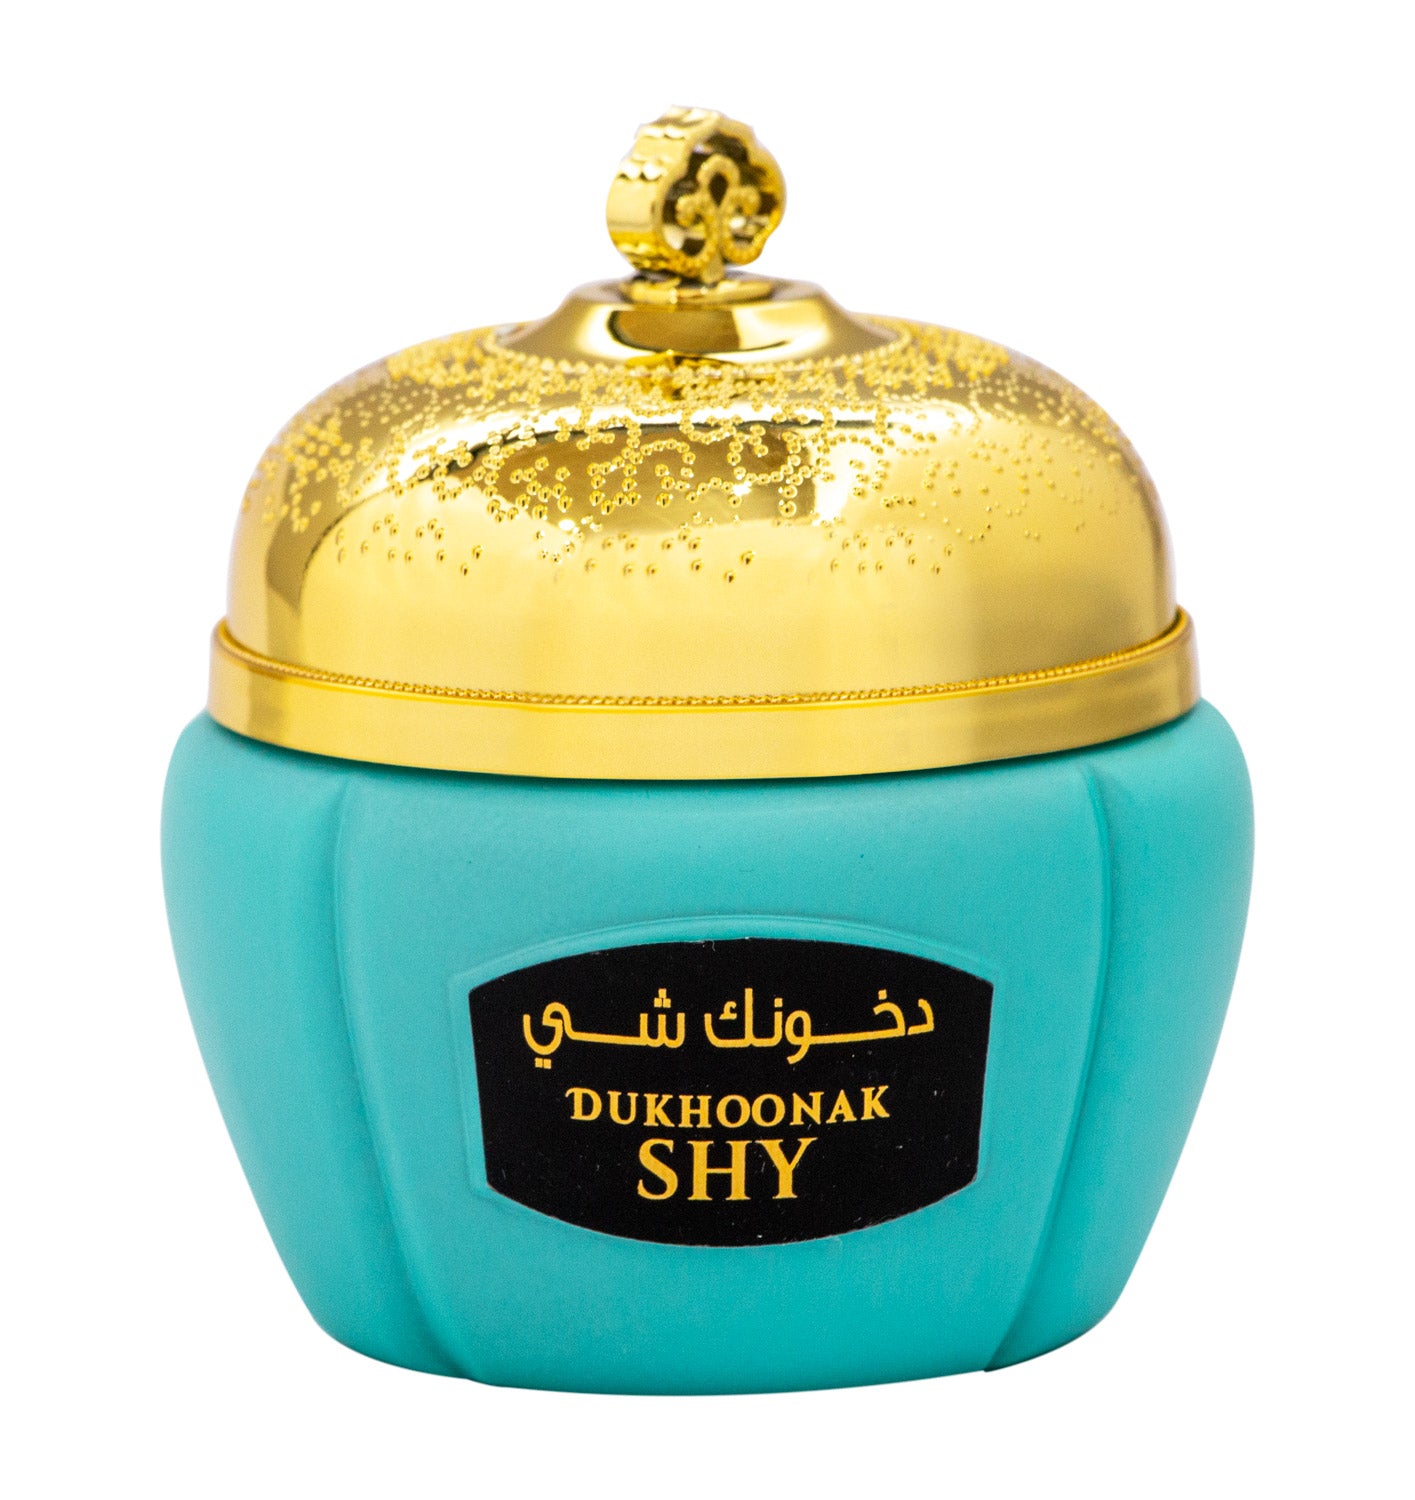 Misk Al Ghazaal Dukhoonak Shy Bakhoor 80gm - samawa perfumes 